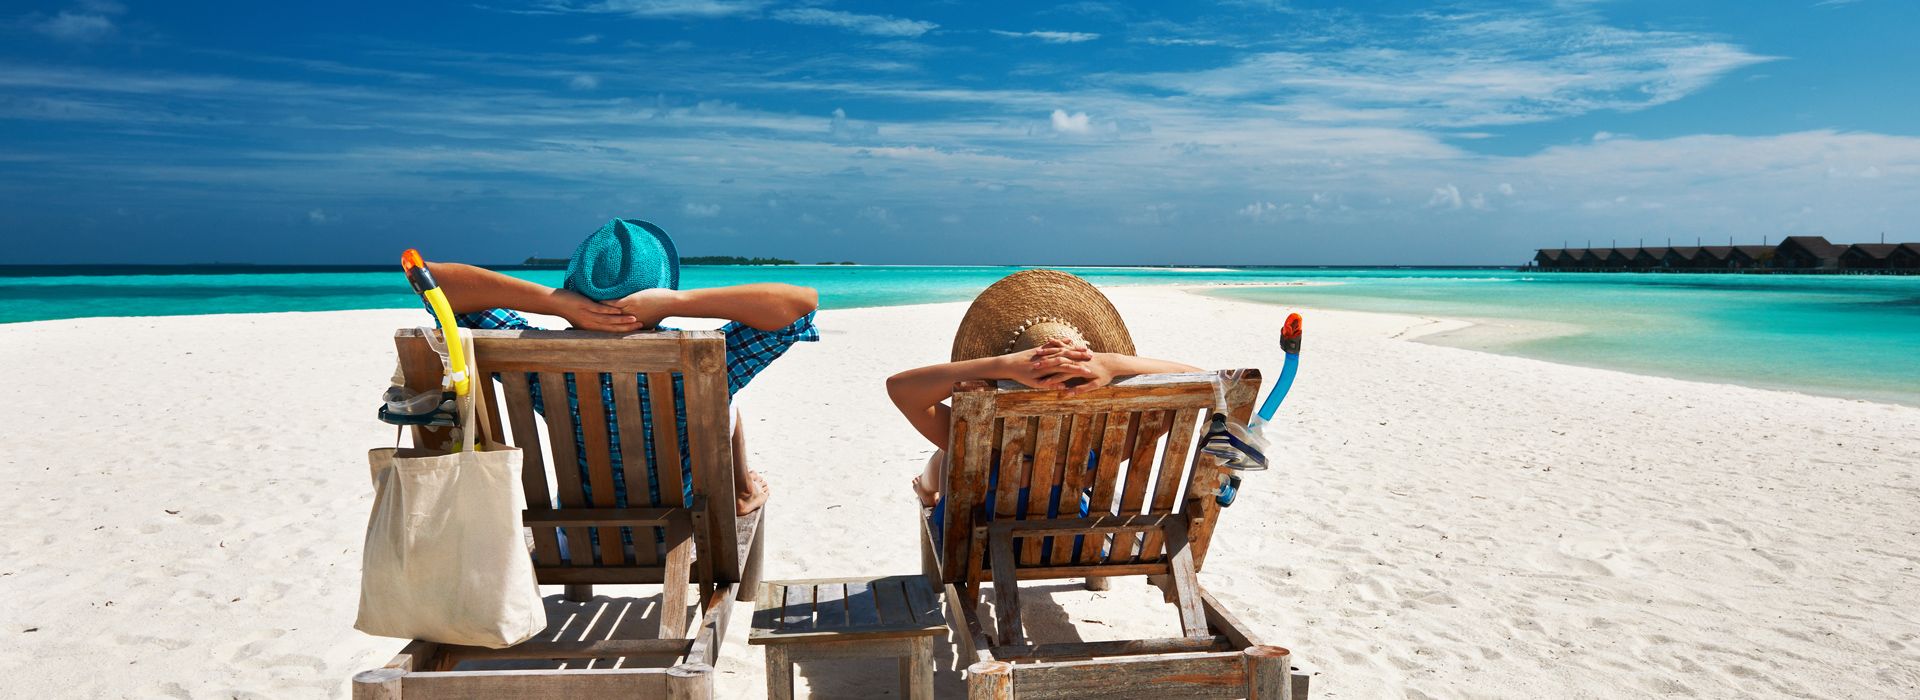 Mann und Frau mit Sonnenhüten liegen enspannt mit einer Auslandskrankenversicherung am Strand, türkisblaues Meer